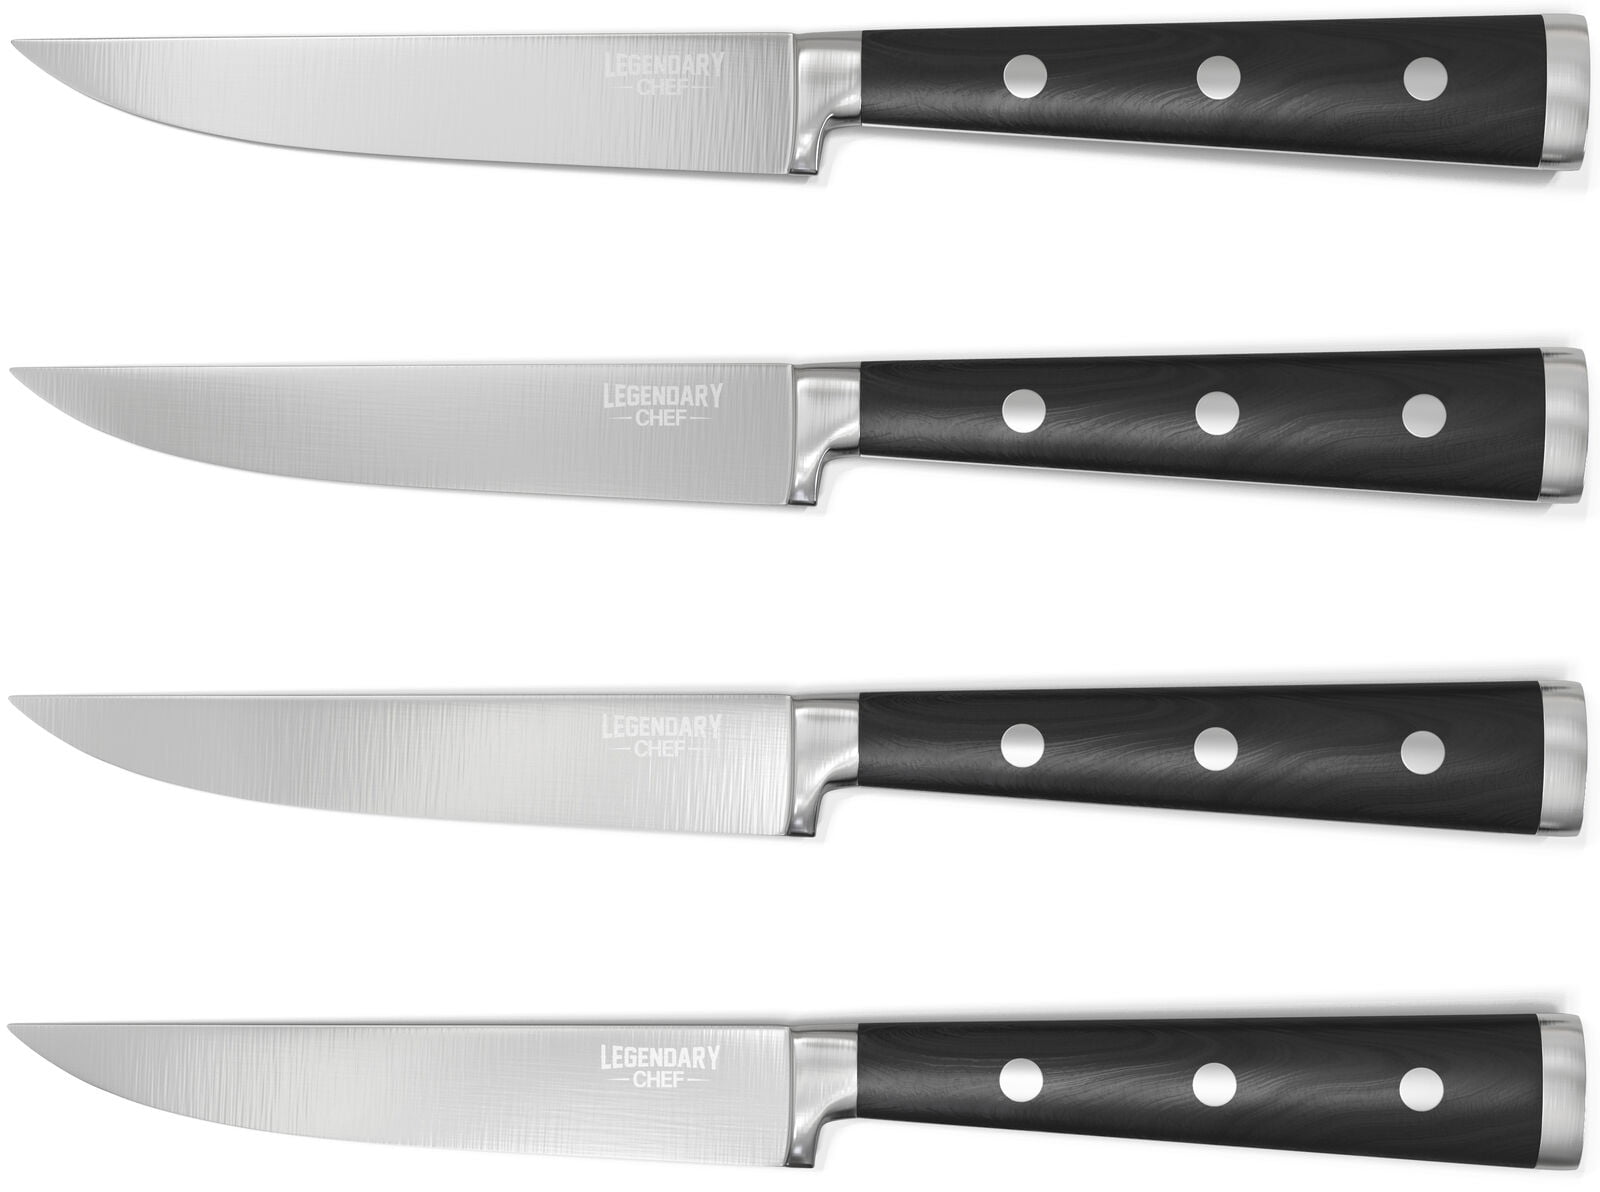  Lasnten 20 Pcs Steak Knives Bulk 9 Inch Stainless